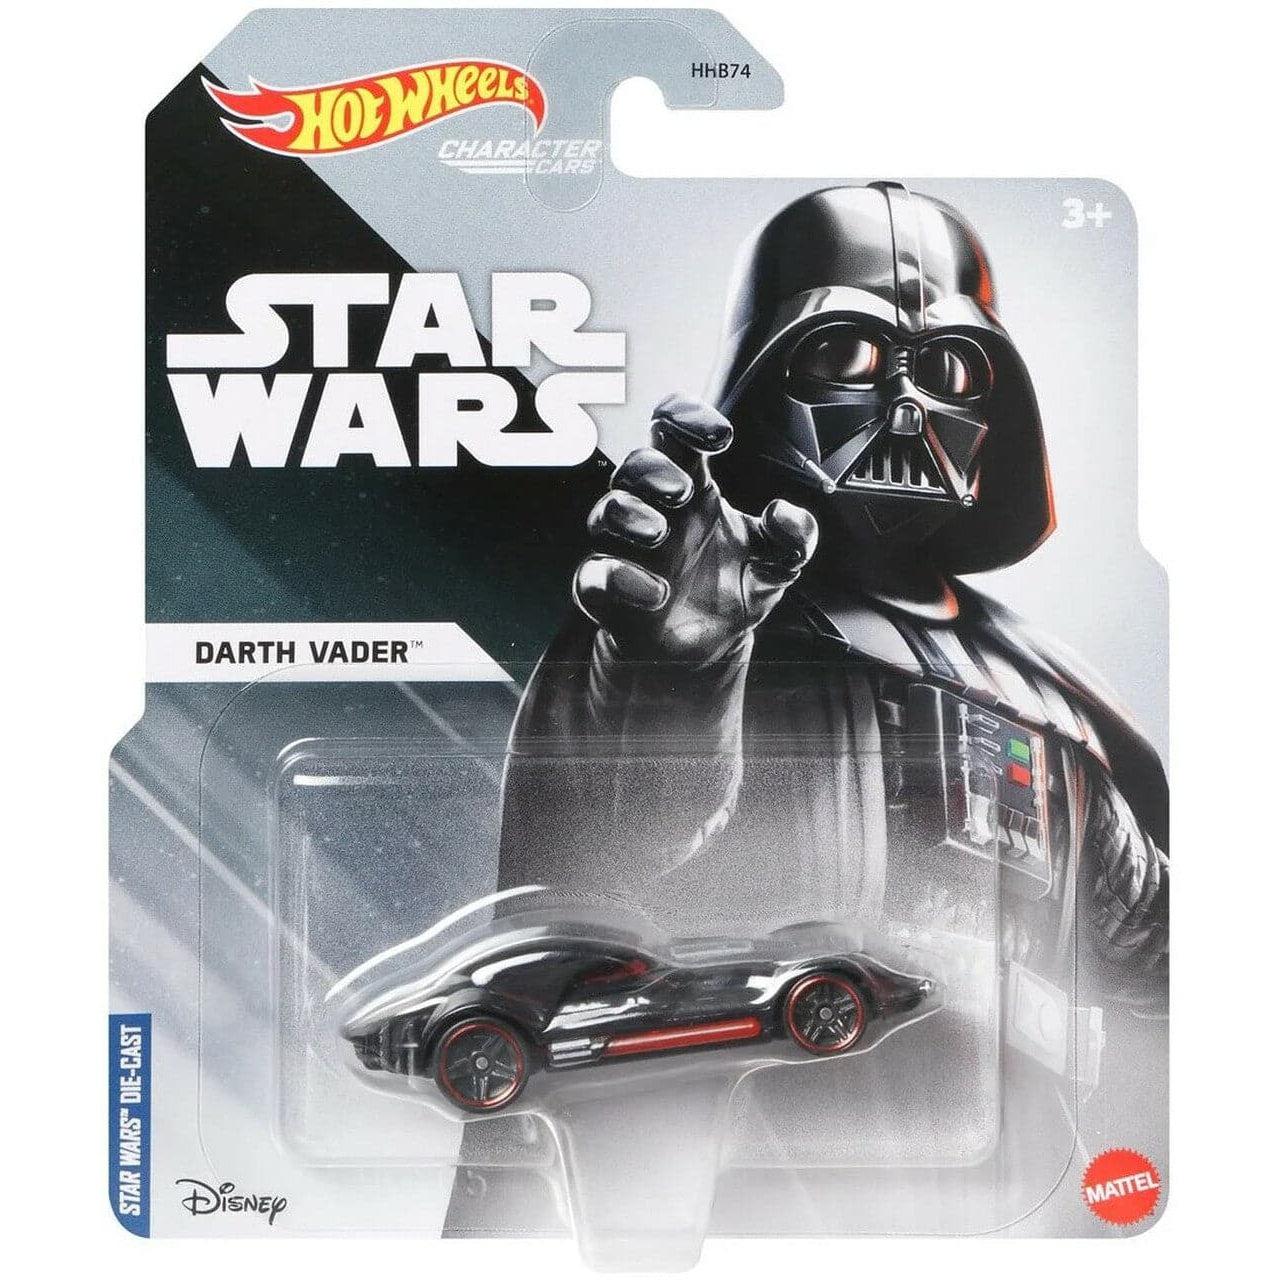 Mattel-Hot Wheels Star Wars Character Cars-HGY05-Darth Vader-Legacy Toys